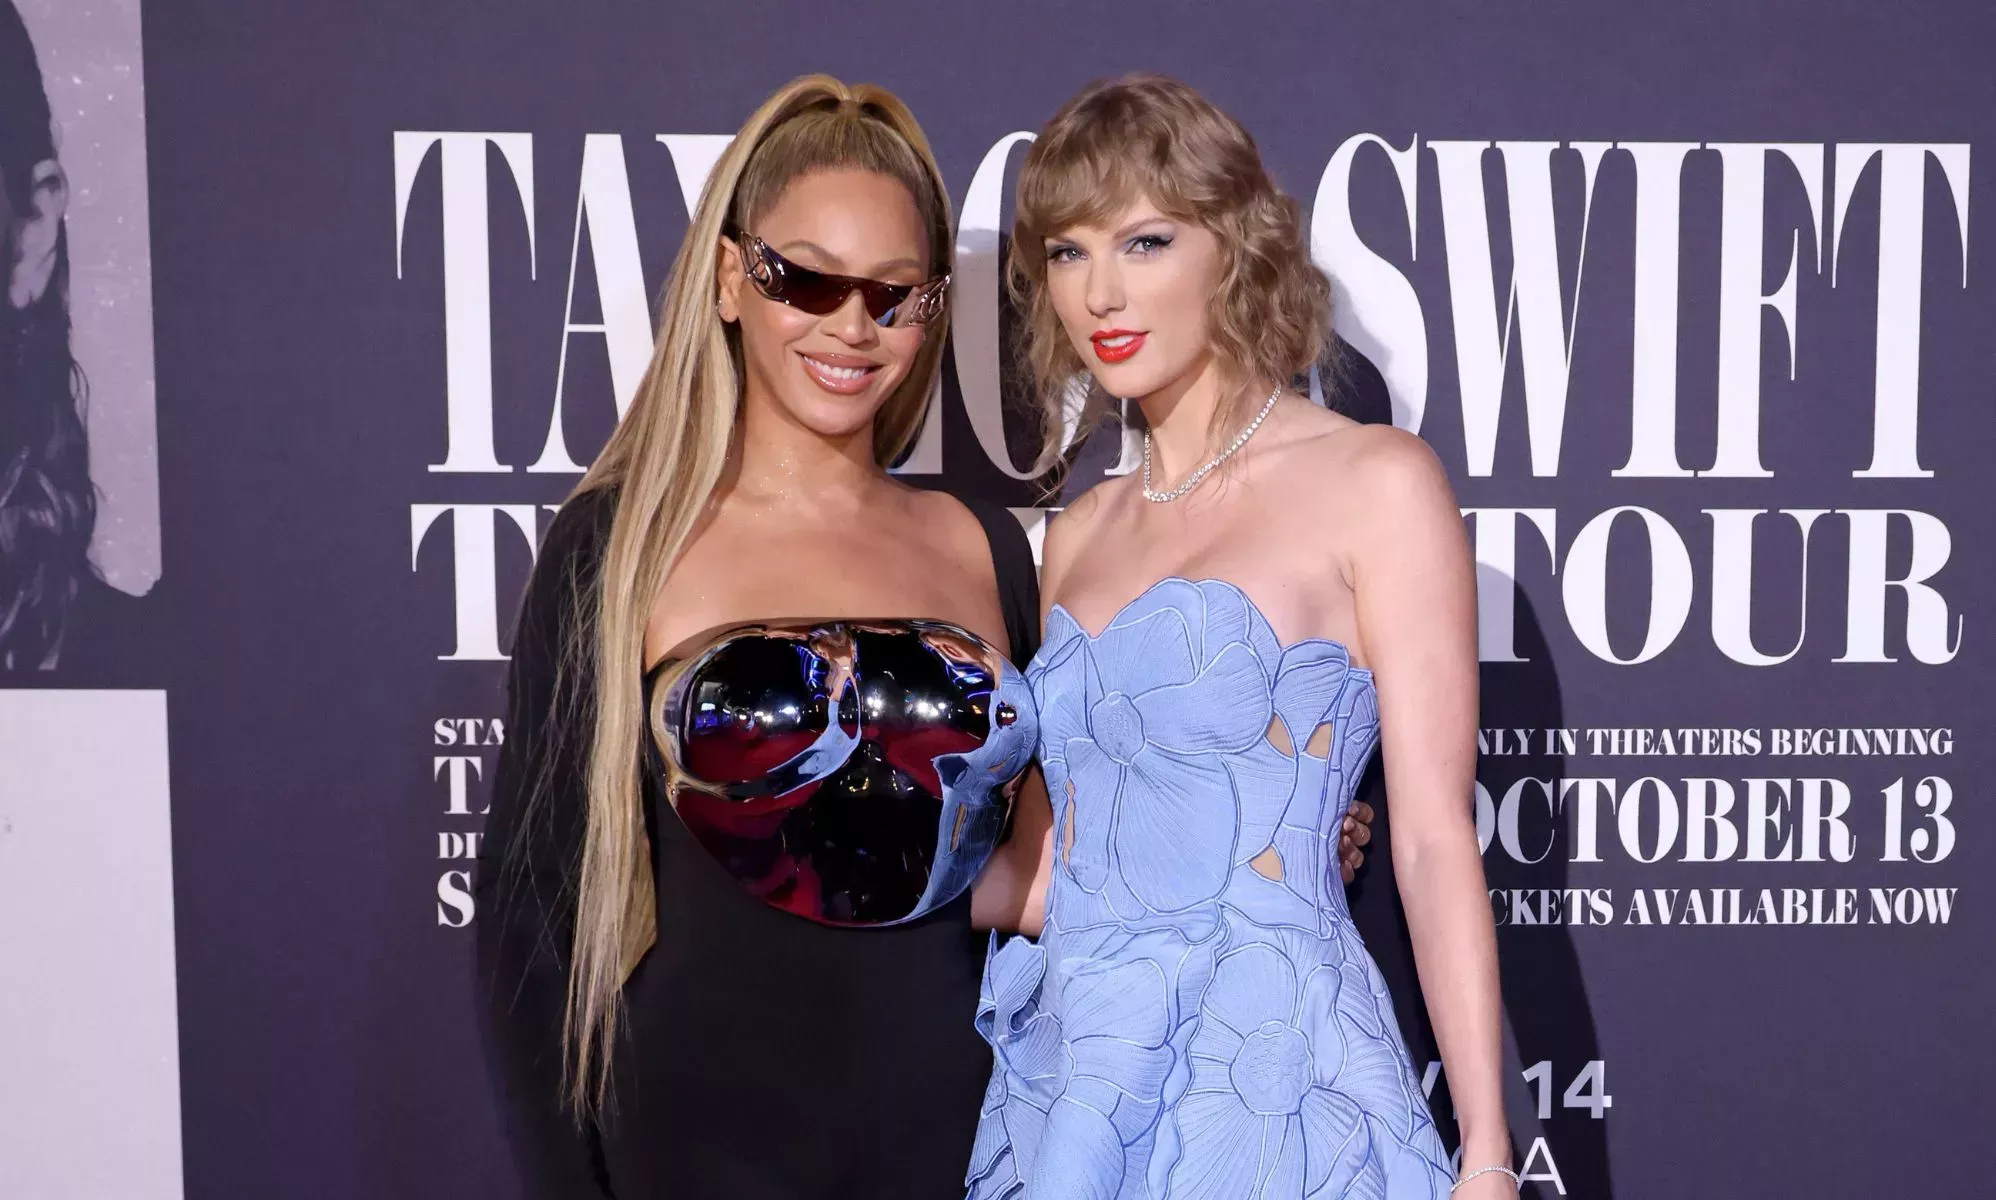 El estreno de la película Eras Tour de Taylor Swift y Beyoncé desata la locura entre sus fans